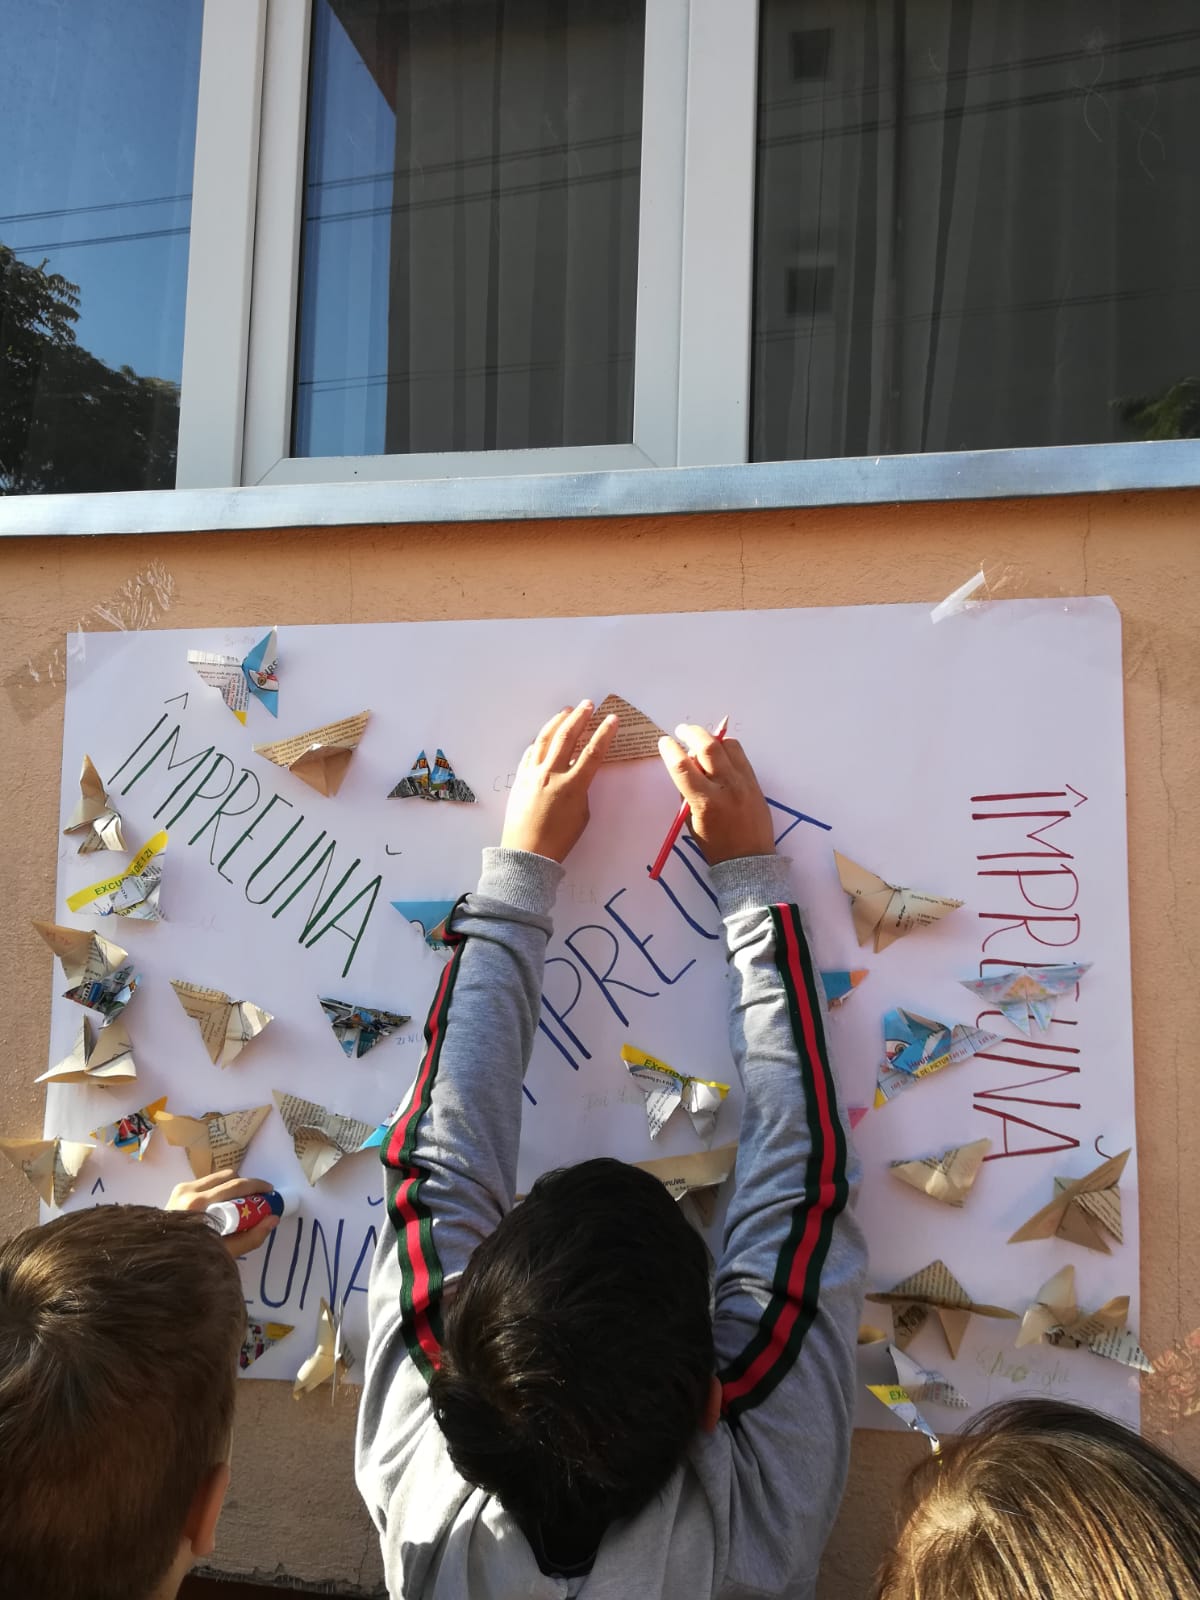 " Activitatea s-a desfășurat în cadrul proiectului ZIN - Ziua Învățării Nonformale și a constat în confecționarea unui fluturaș - tehnica origami.